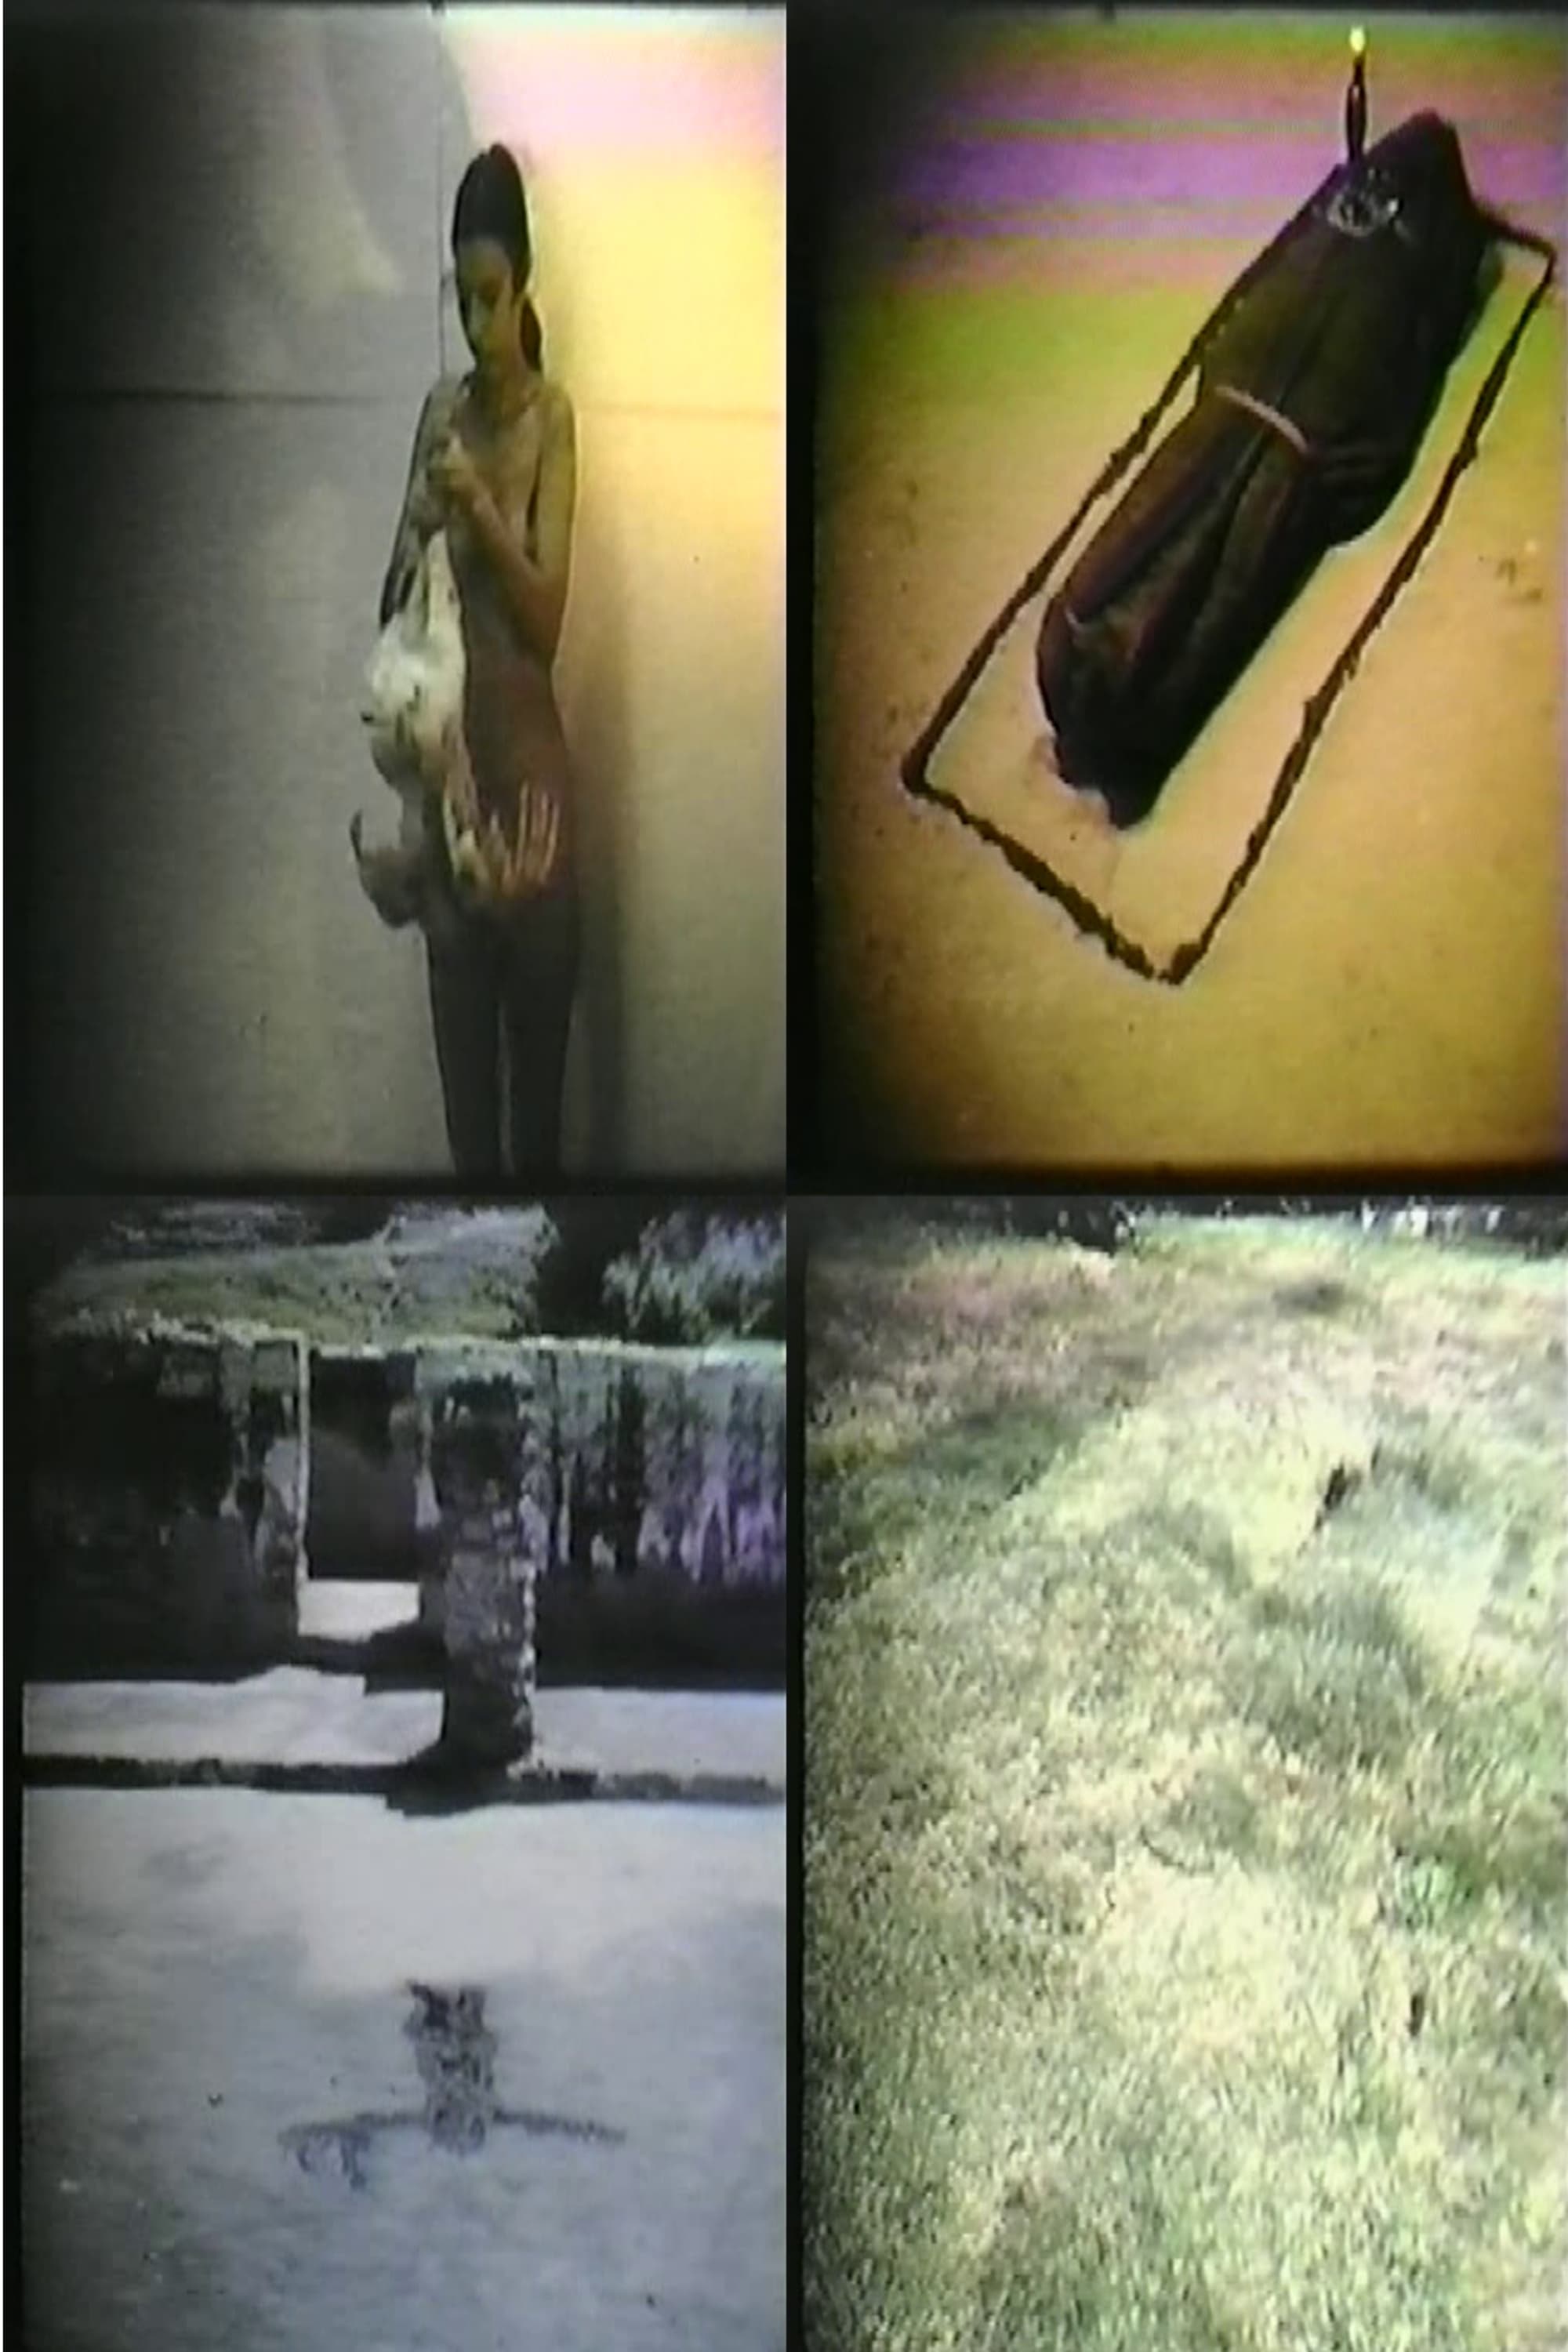 Ana Mendieta: Selected Film Works